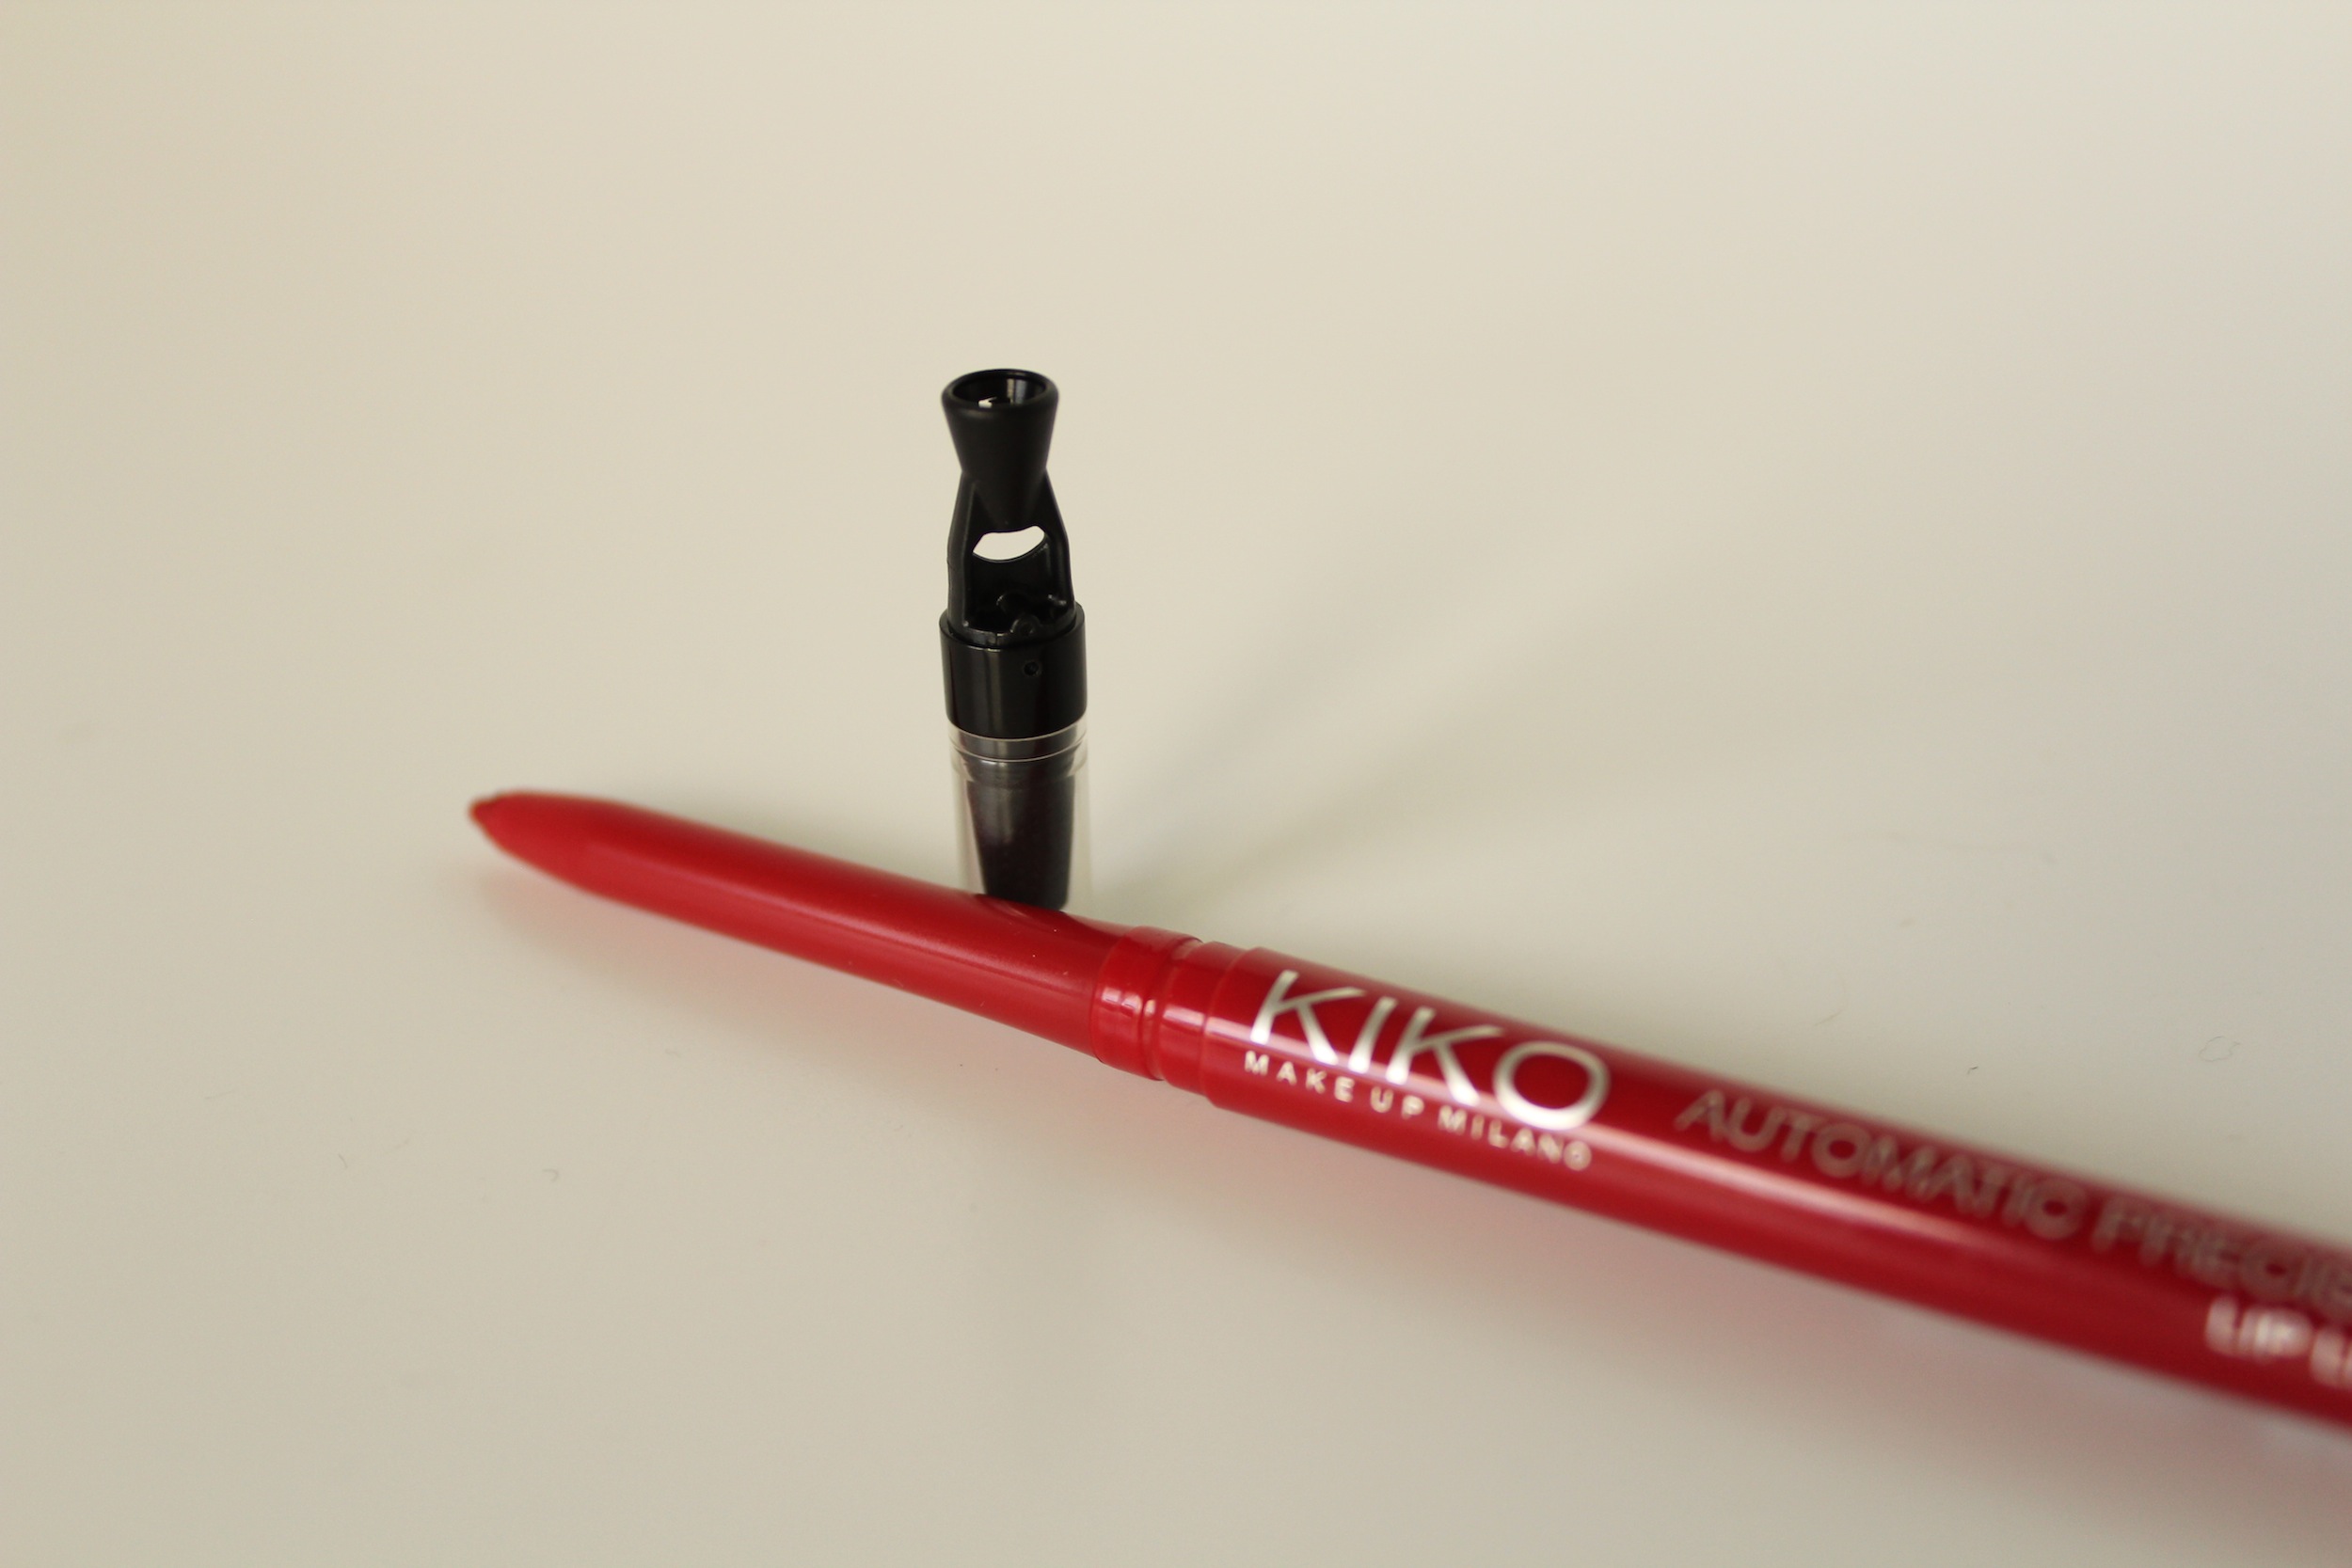 Kiko Automatic Precision Lip Liner in 505